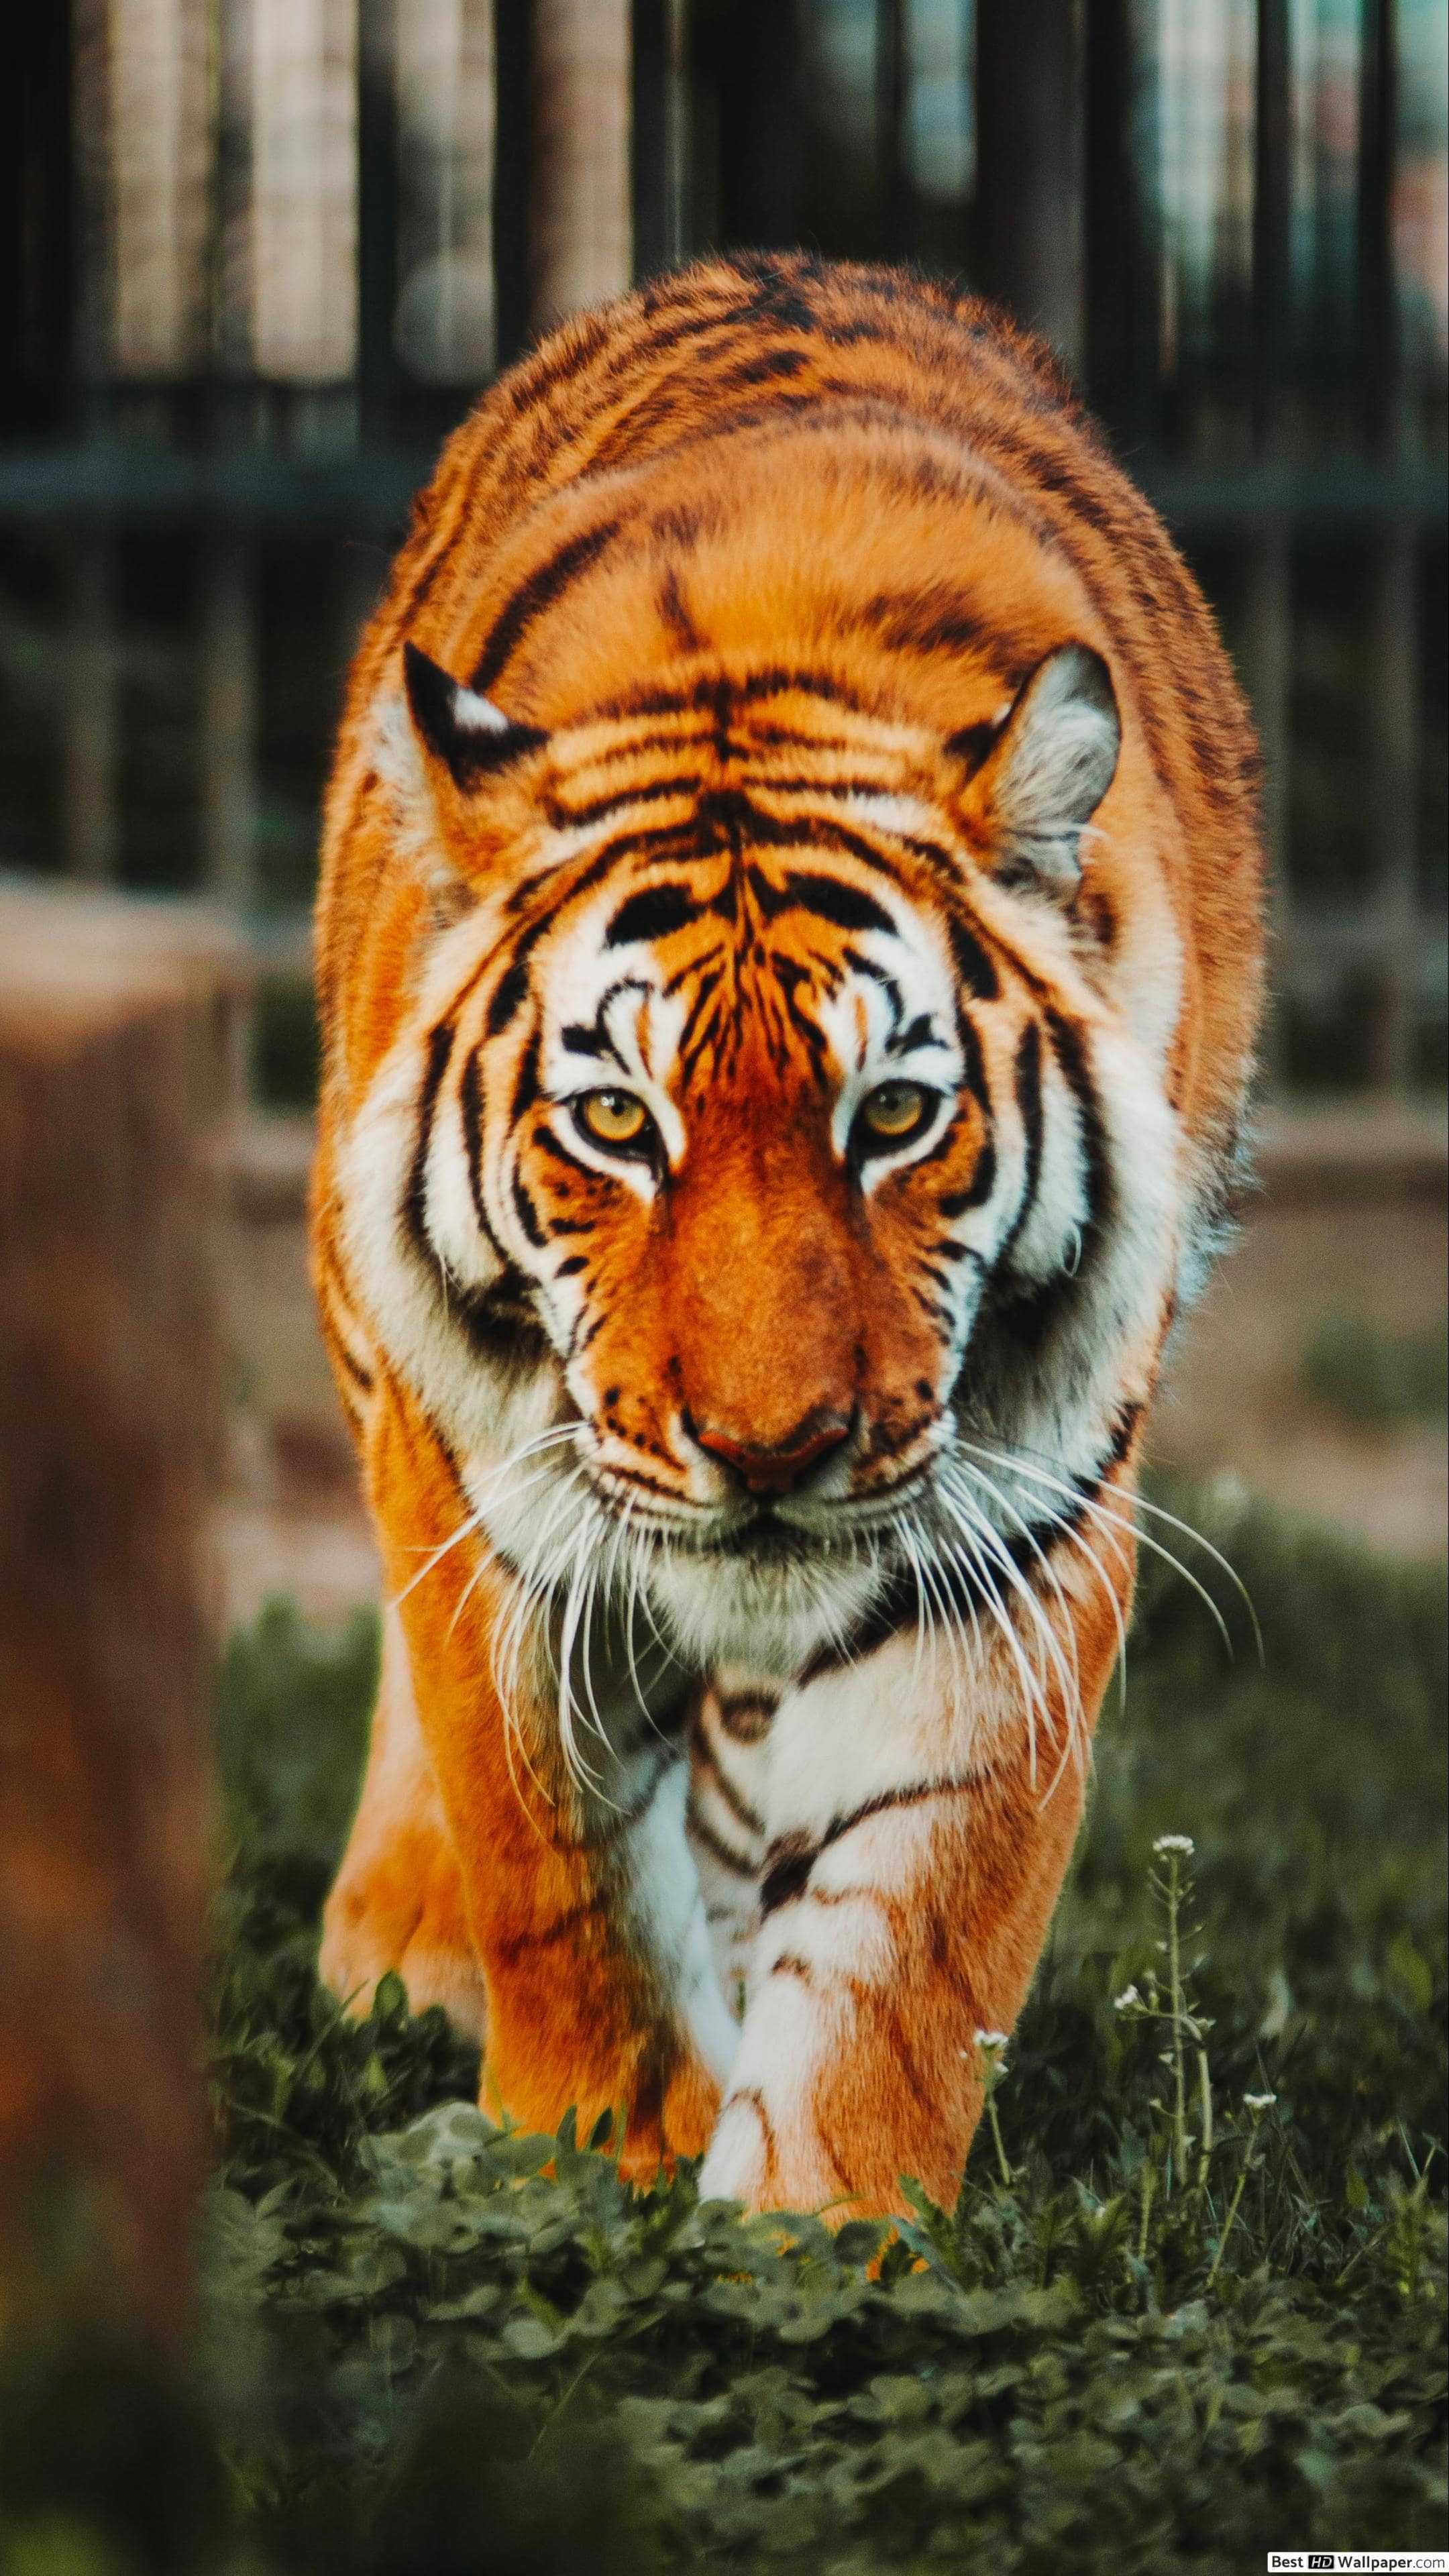 Hình nền con hổ cực đẹp cho máy tính ảnh nền hổ cho laptop   QuanTriMangcom